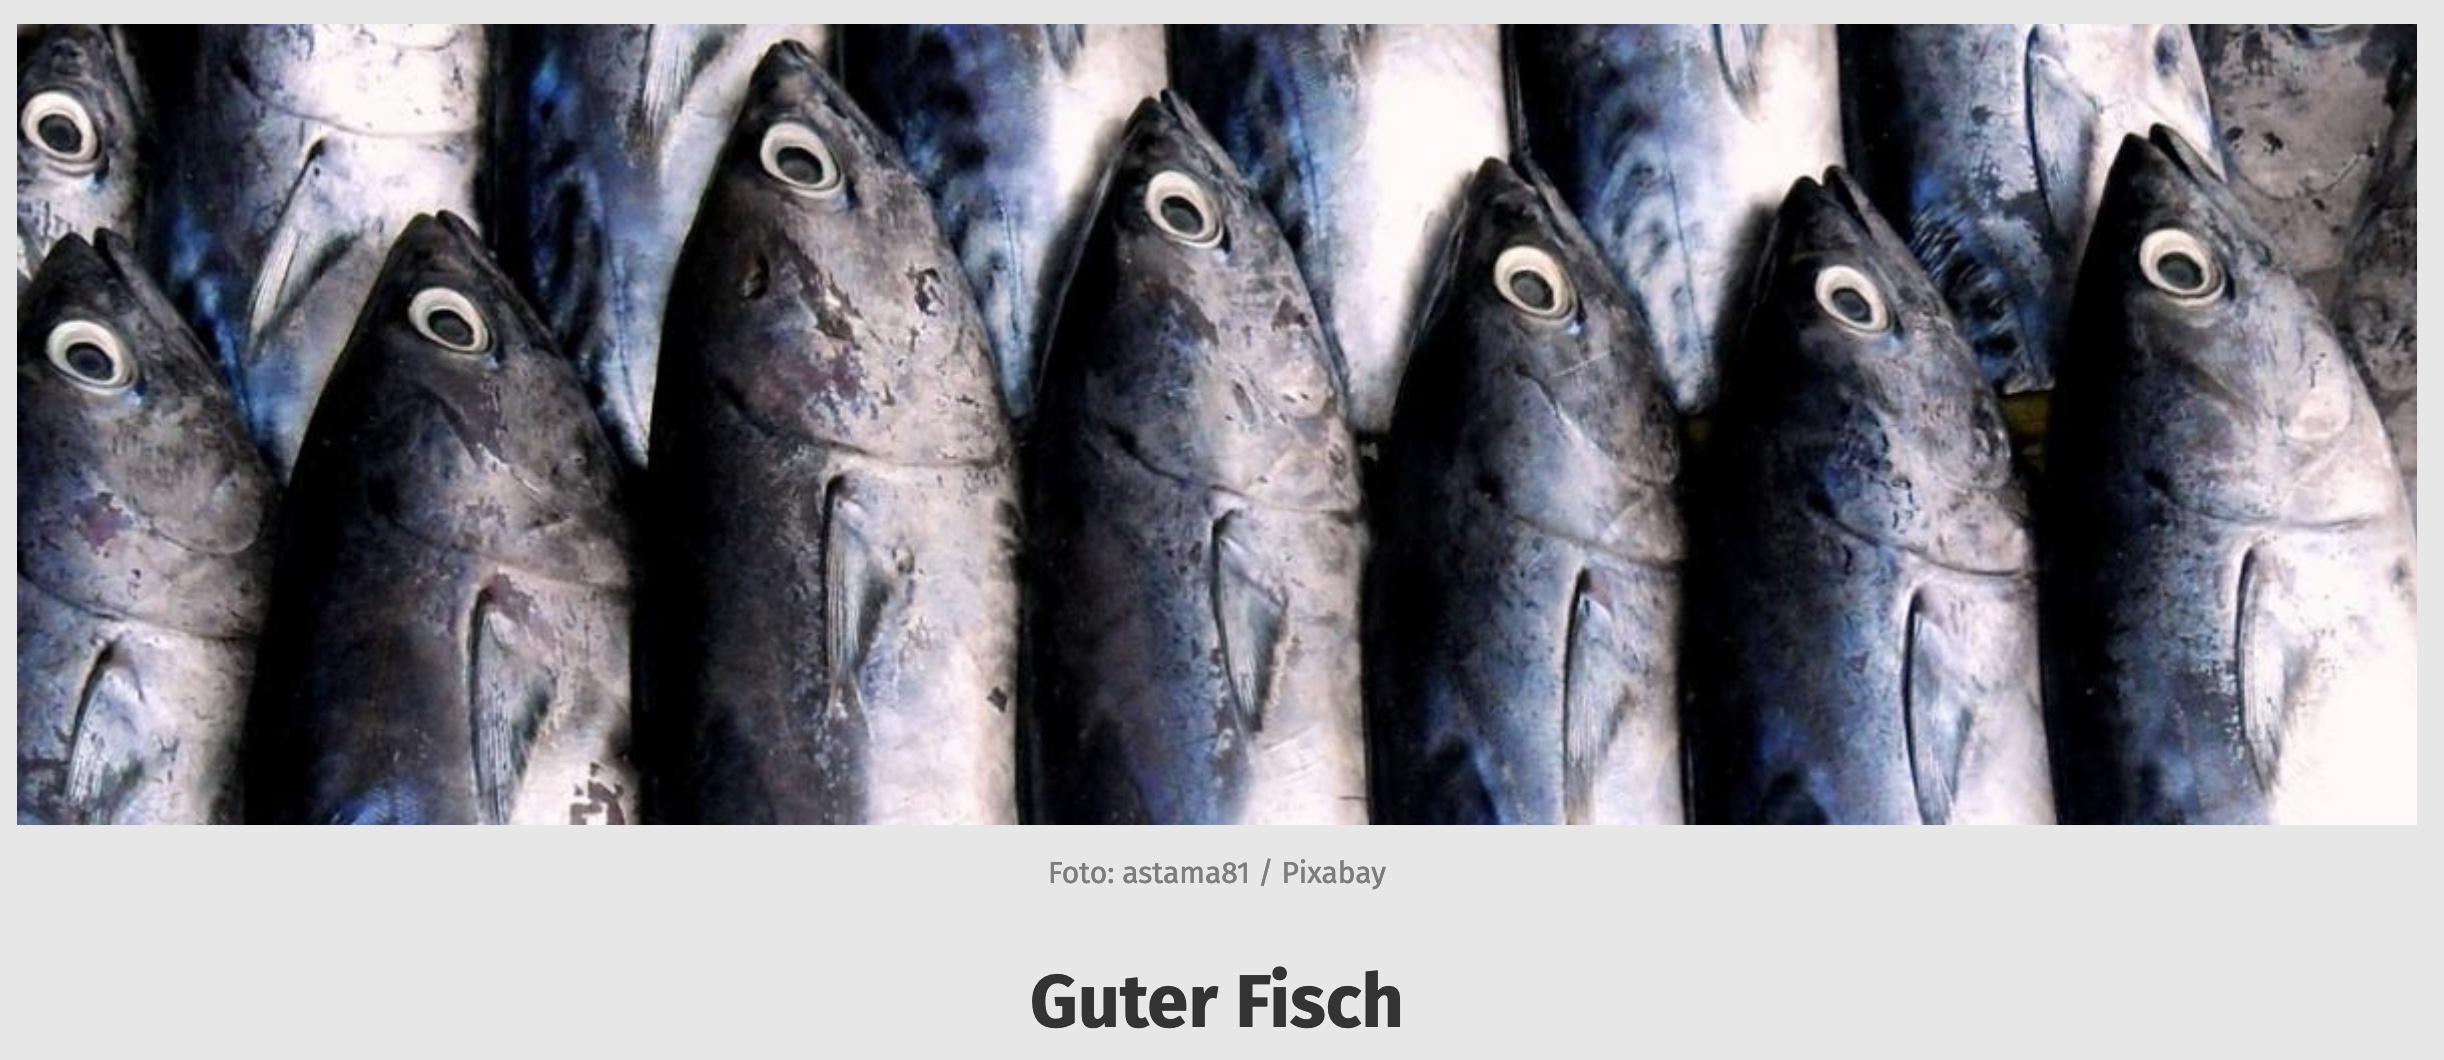 "Guter Fisch-Liste": FIZ übt Kritik an Verbraucherzentrale Berlin